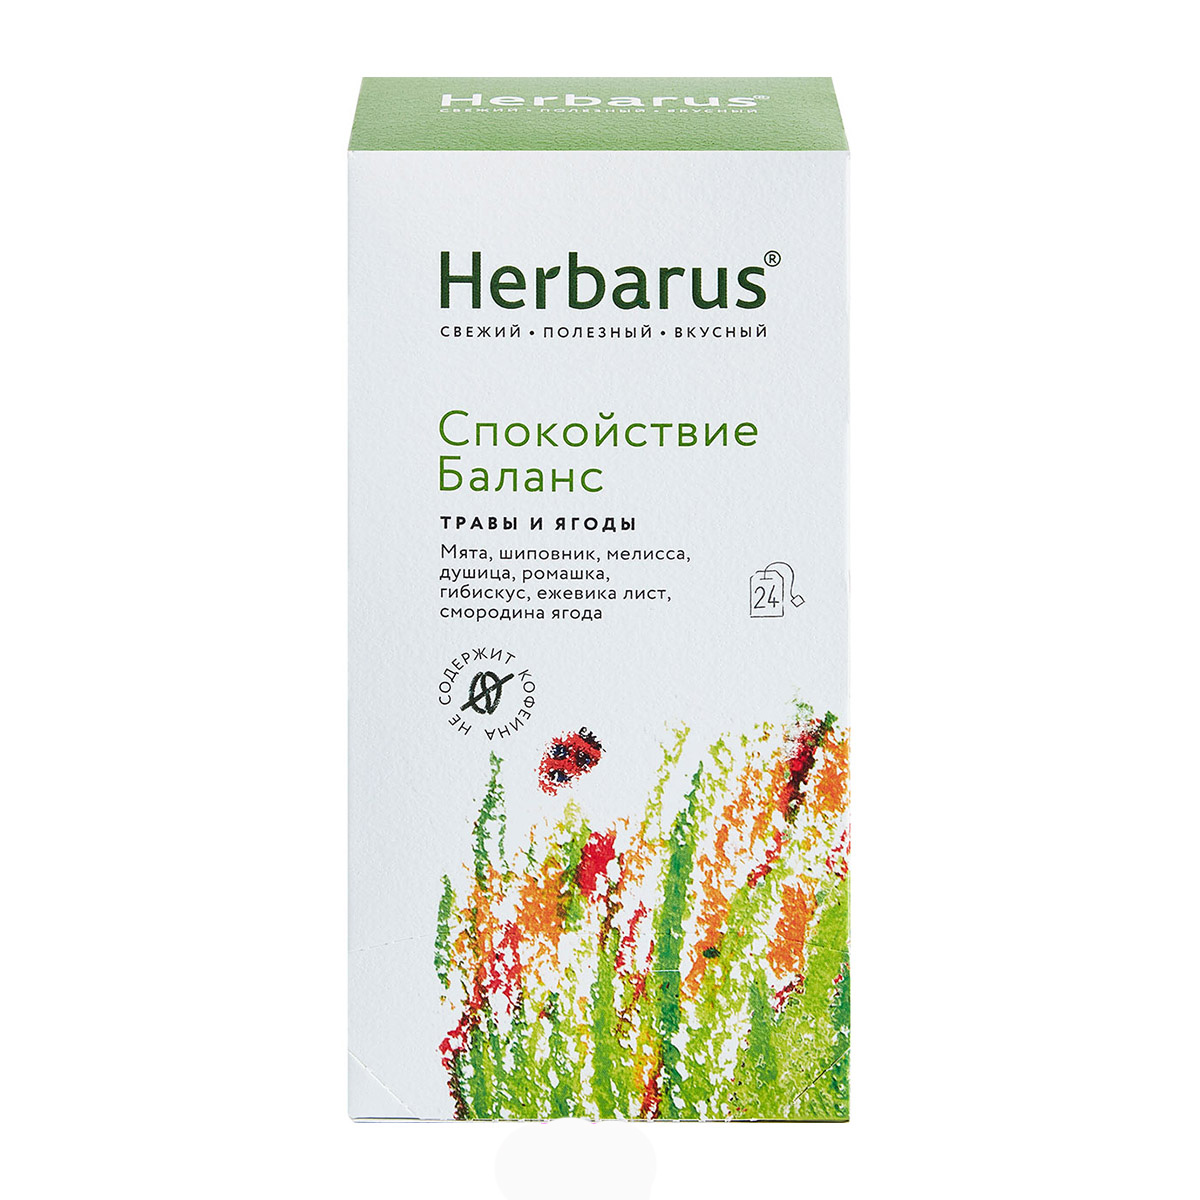 Herbarus Чайный напиток Спокойствие и баланс, 24 шт х 1,8 г (Herbarus, Травы и ягоды) чайный напиток herbarus ассорти травы и ягоды 24 пакетиков